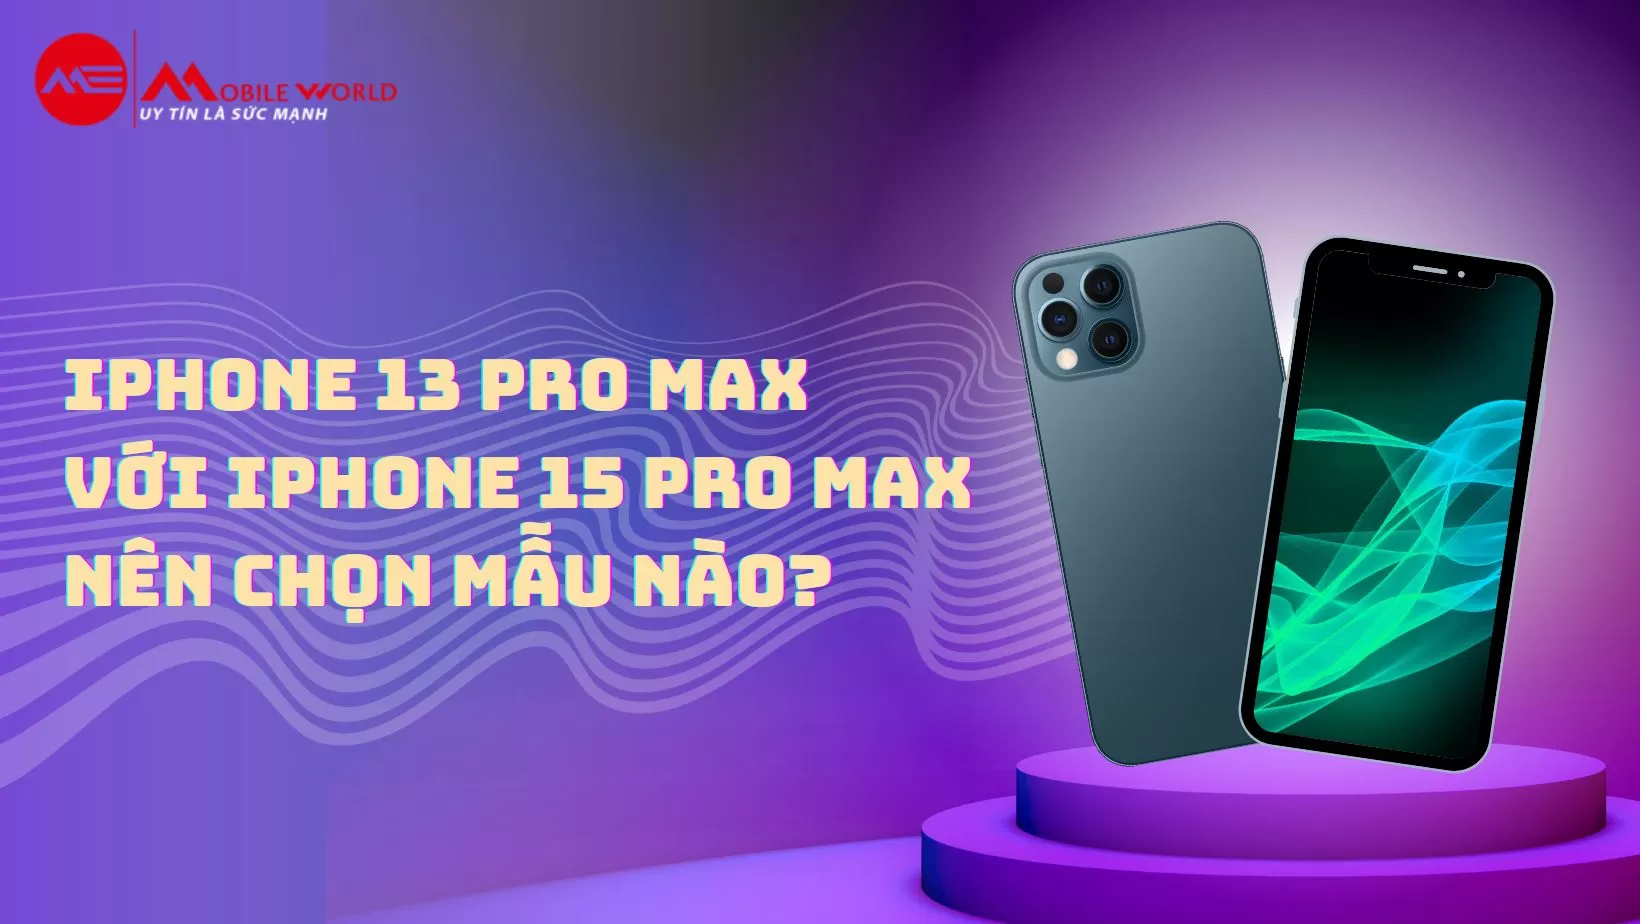 iPhone 13 Pro Max với iPhone 15 Pro Max nên chọn mẫu nào?